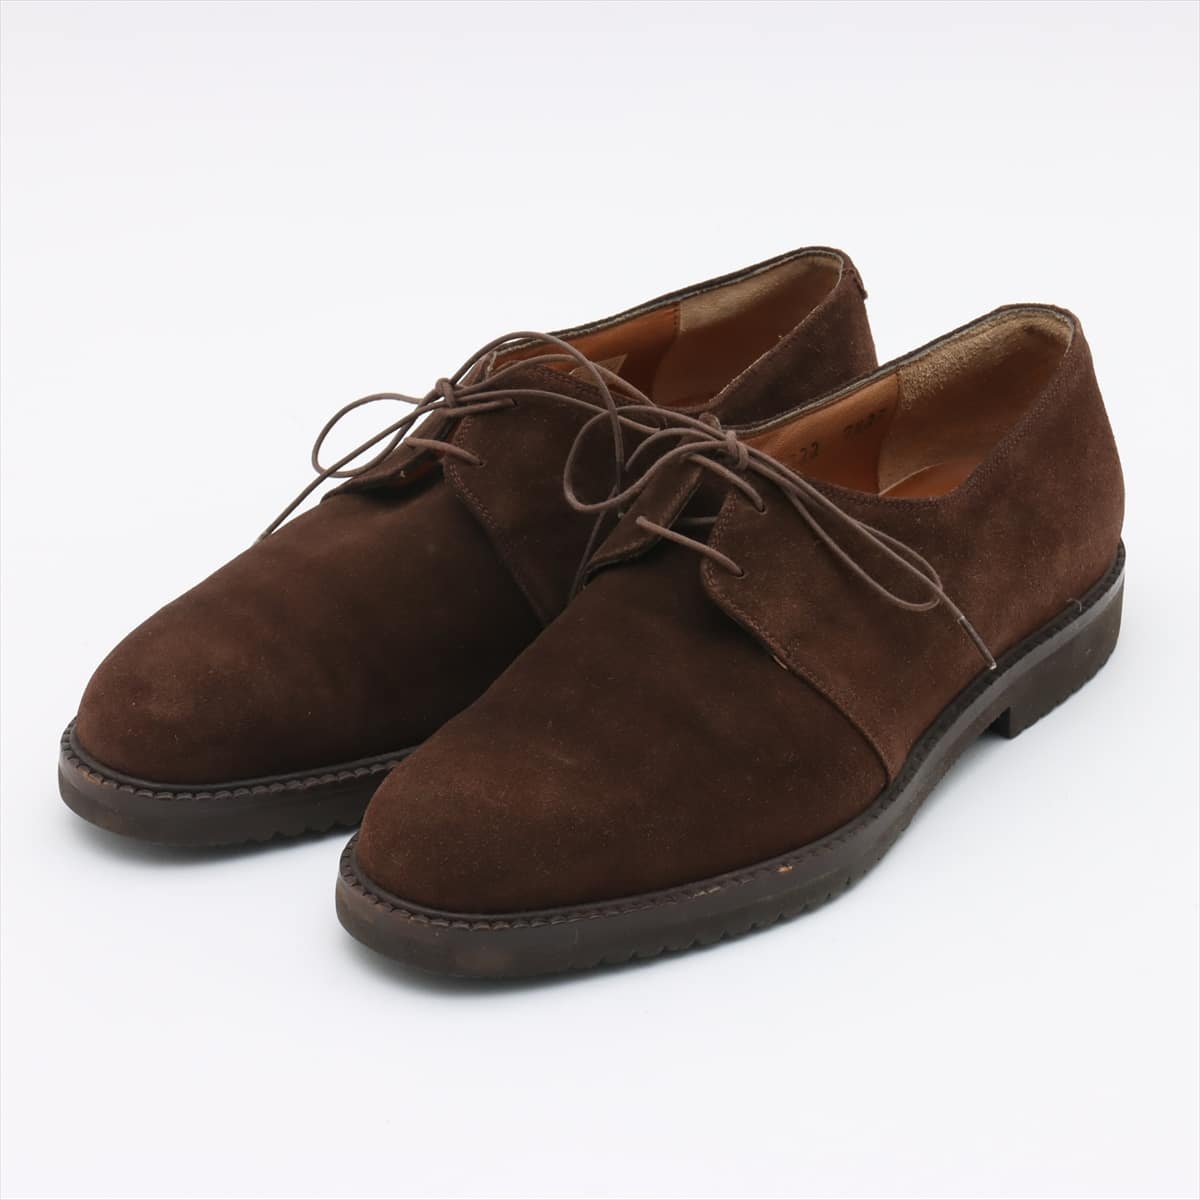 Ferragamo Suede Leather shoes 7 1/2E Men's Brown